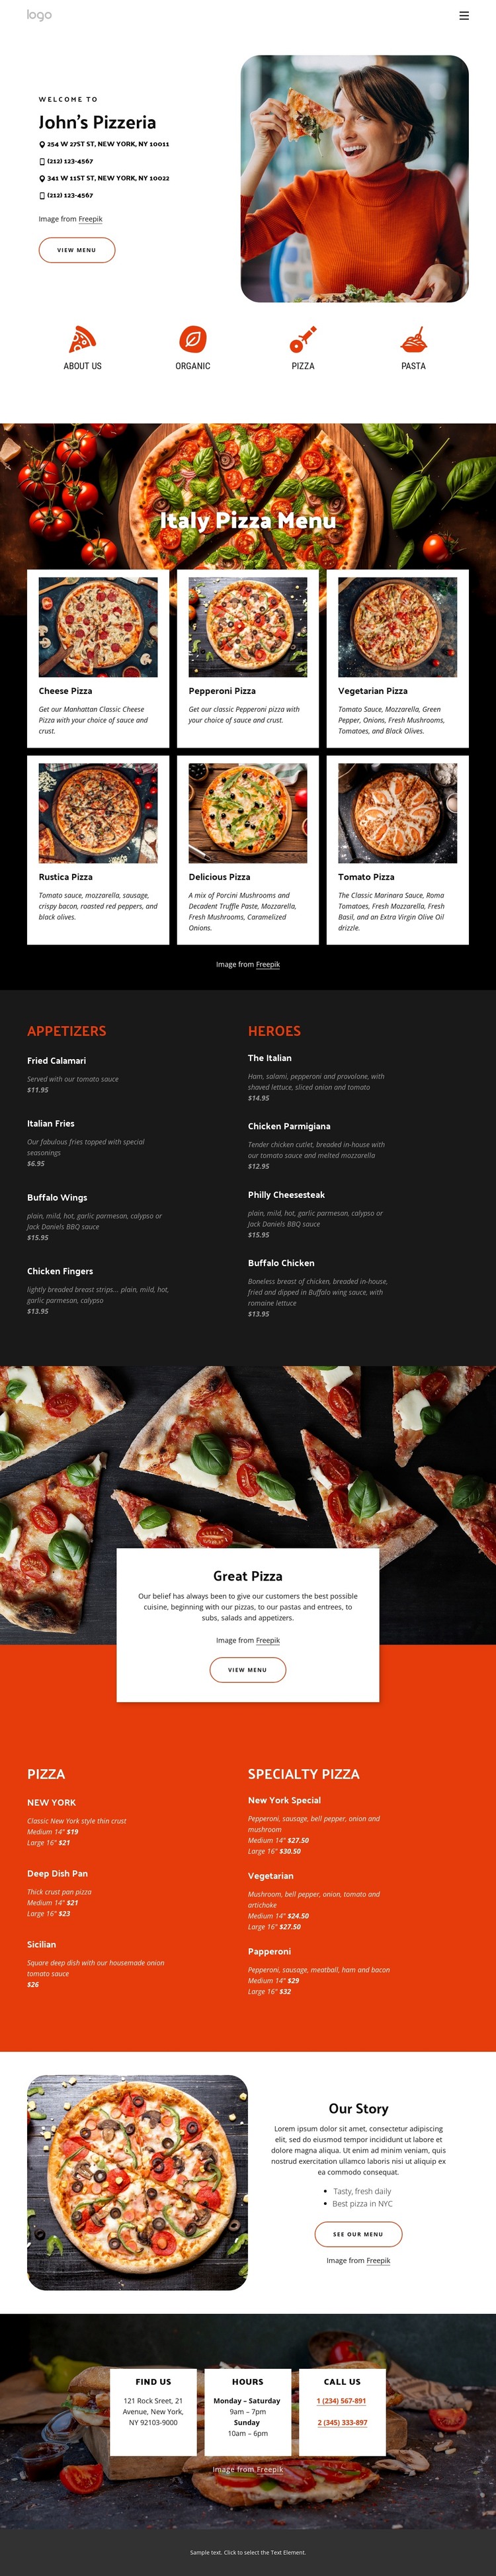 Pizzeria WordPress Theme